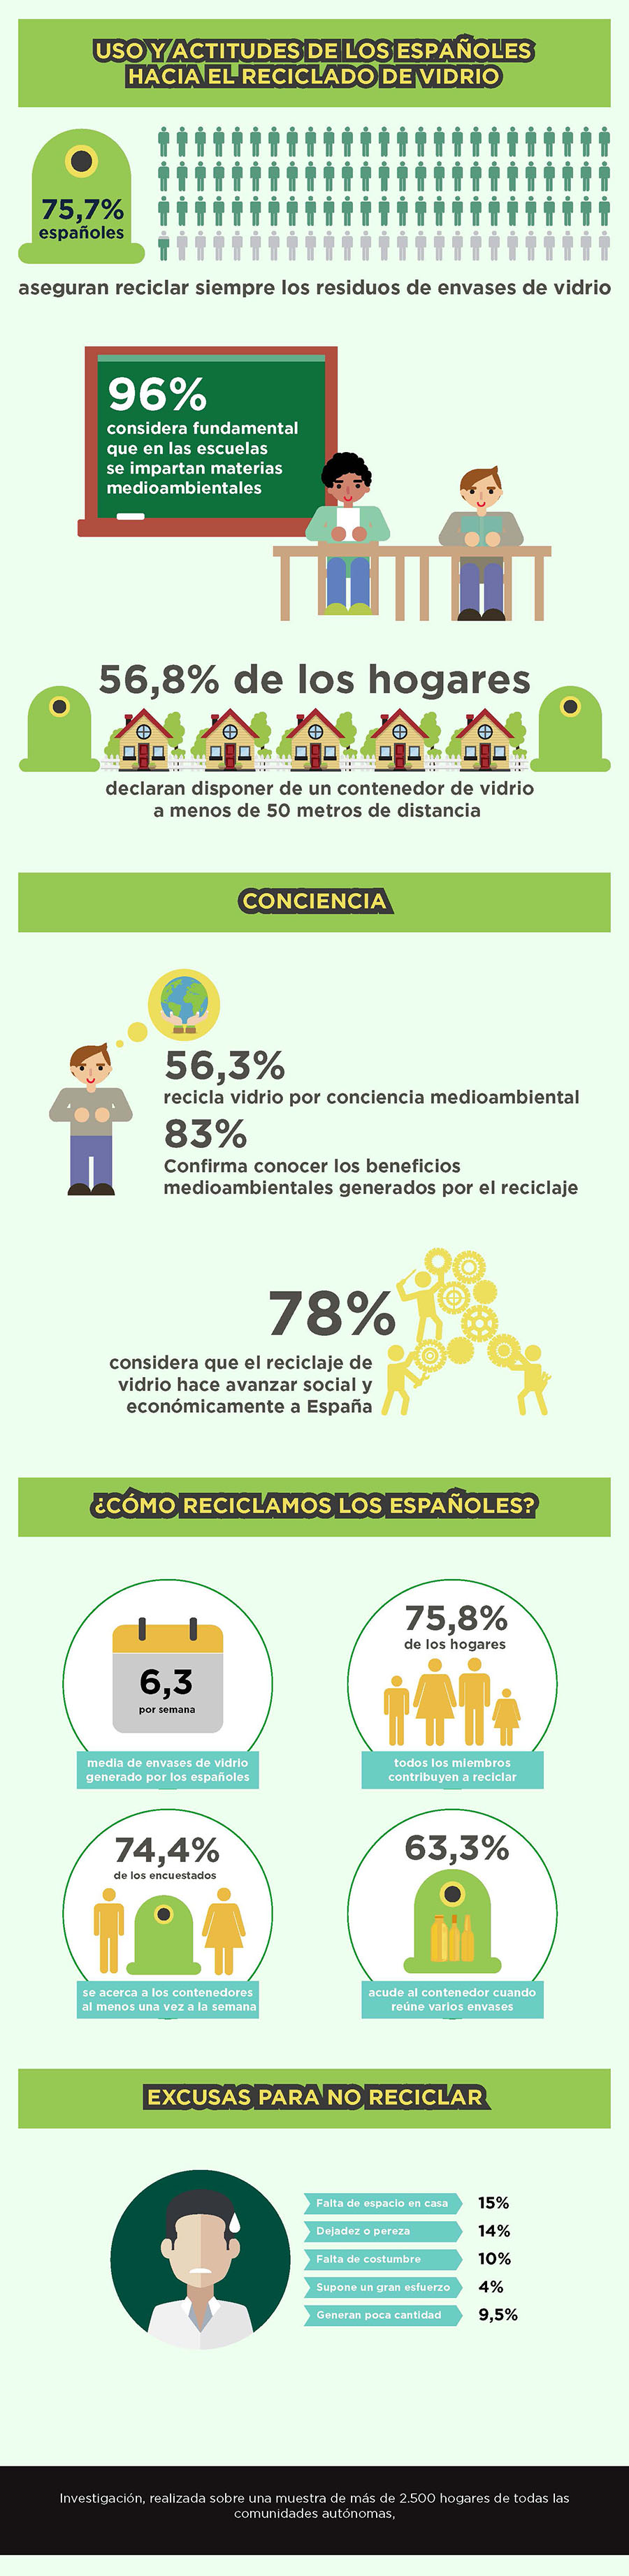 Principales resultados del informe sobre hábitos de los españoles en el reciclaje de vidrio